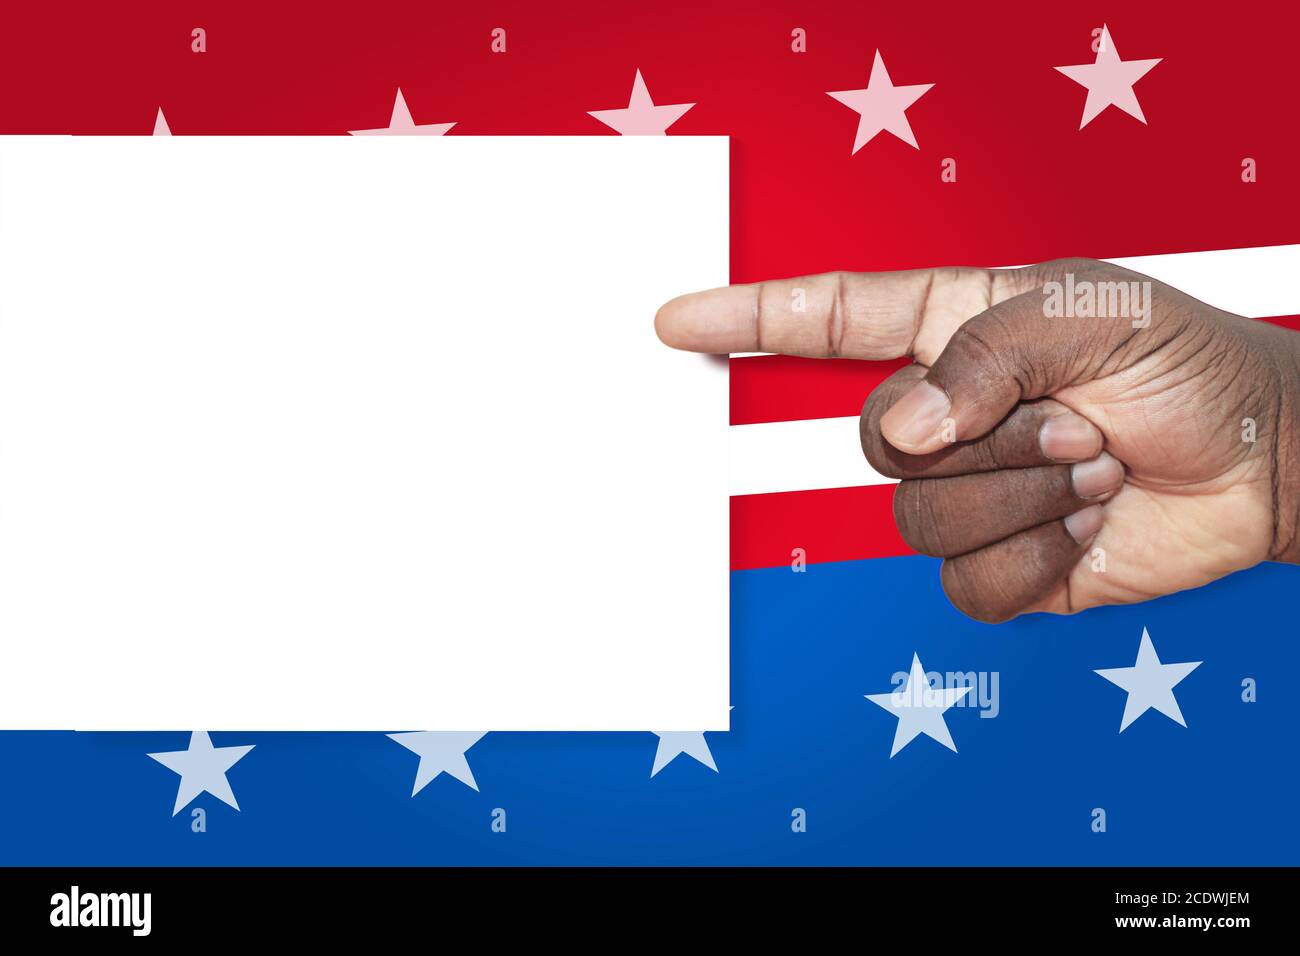 Schwarze Mann die Hand zeigt auf leere Zeichen auf US-Sterne und Streifen Hintergrund. Amerikanische Unabhängigkeit und Politik unterzeichnen und Checkliste Vorlage. Stockfoto